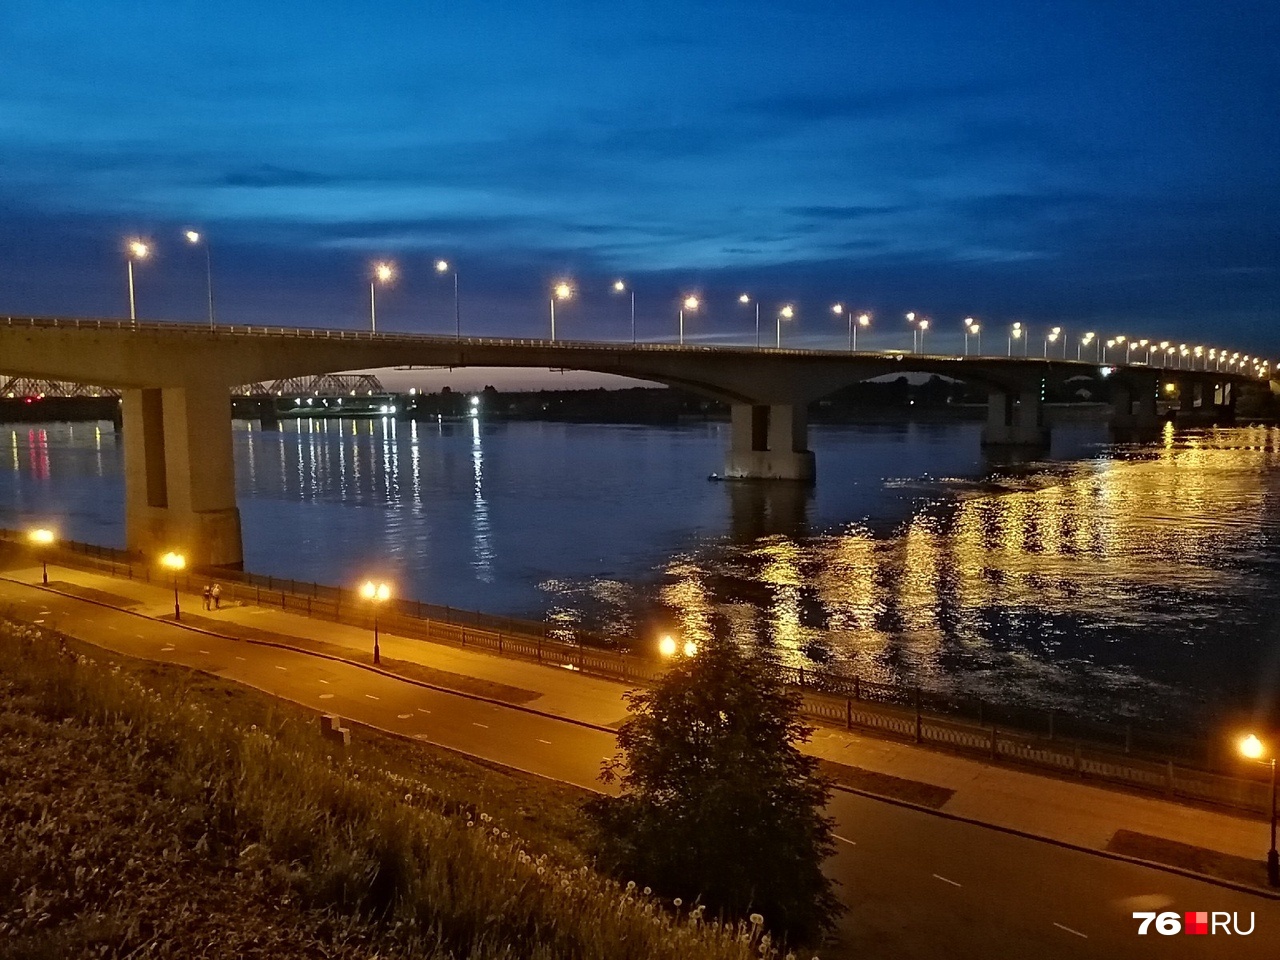 Сообщают о падении человека с Октябрьского моста: на месте работает полиция, на воде — лодки